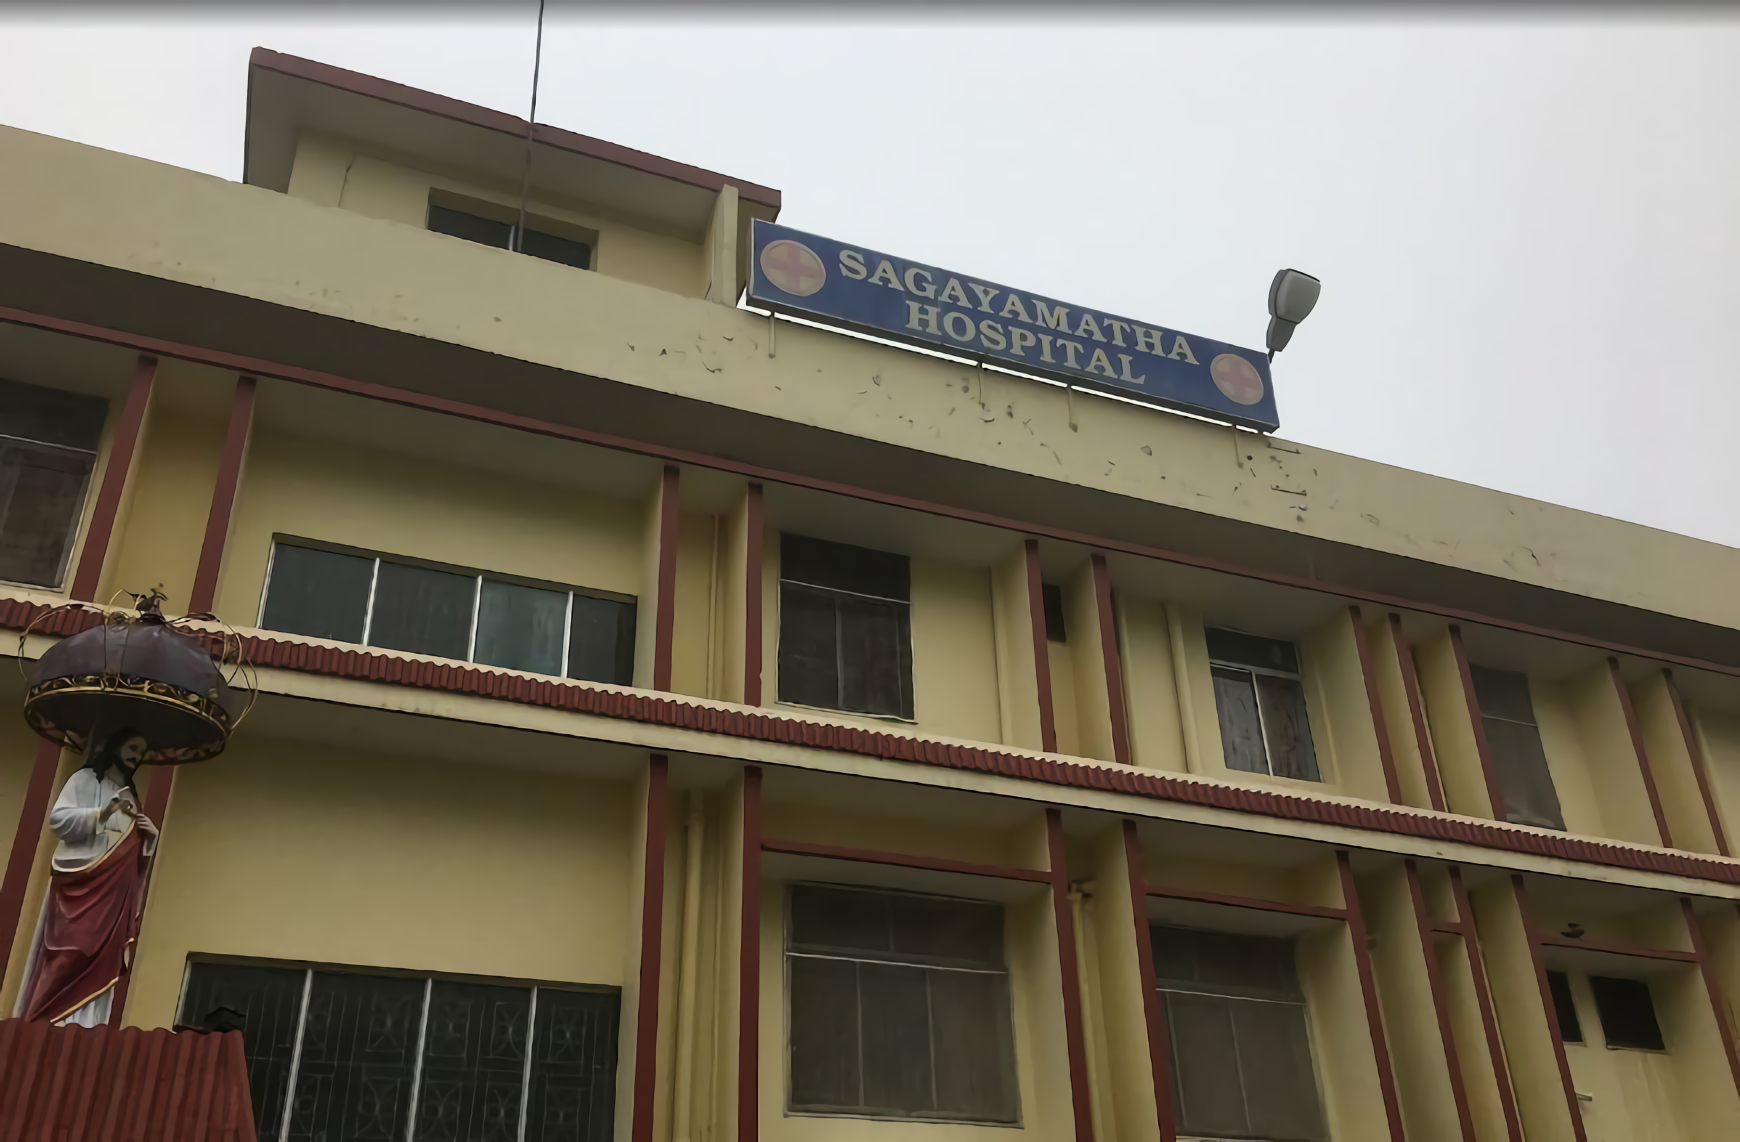 Sagayamatha Hospital